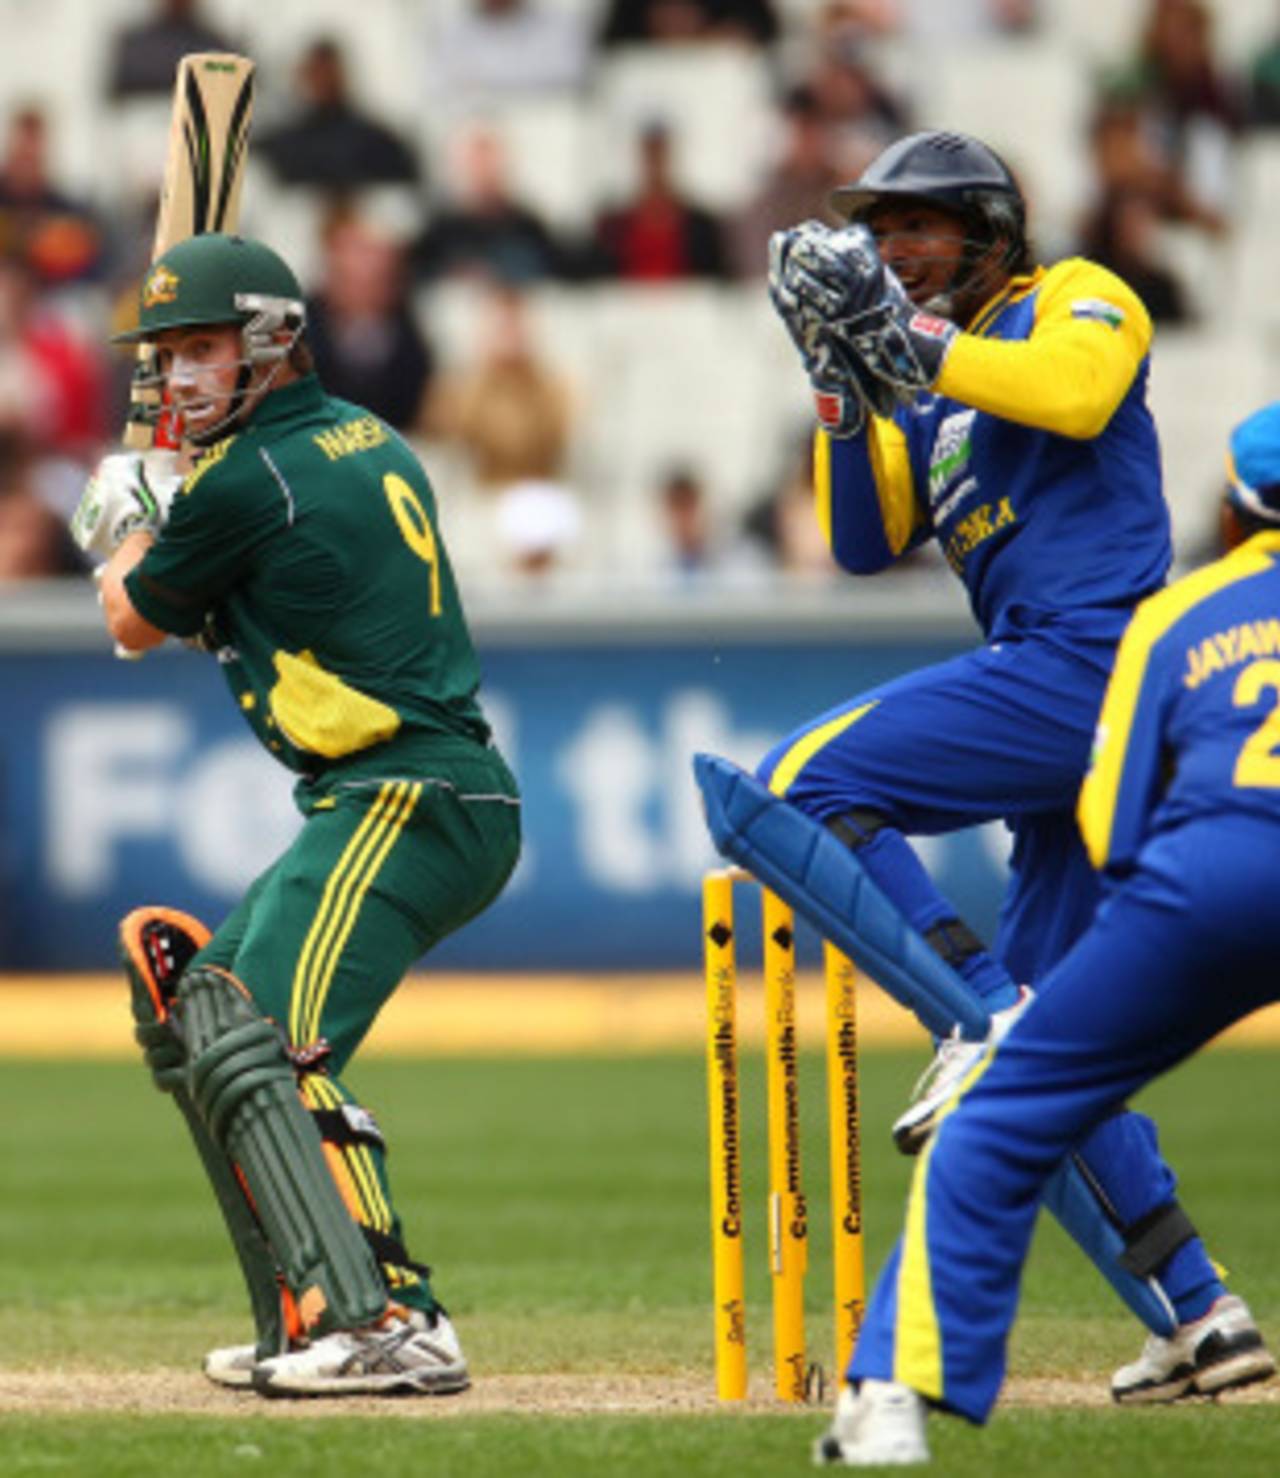 Kumar Sangakkara collects Shaun Marsh's edge, Australia v Sri Lanka, 1st ODI, Melbourne